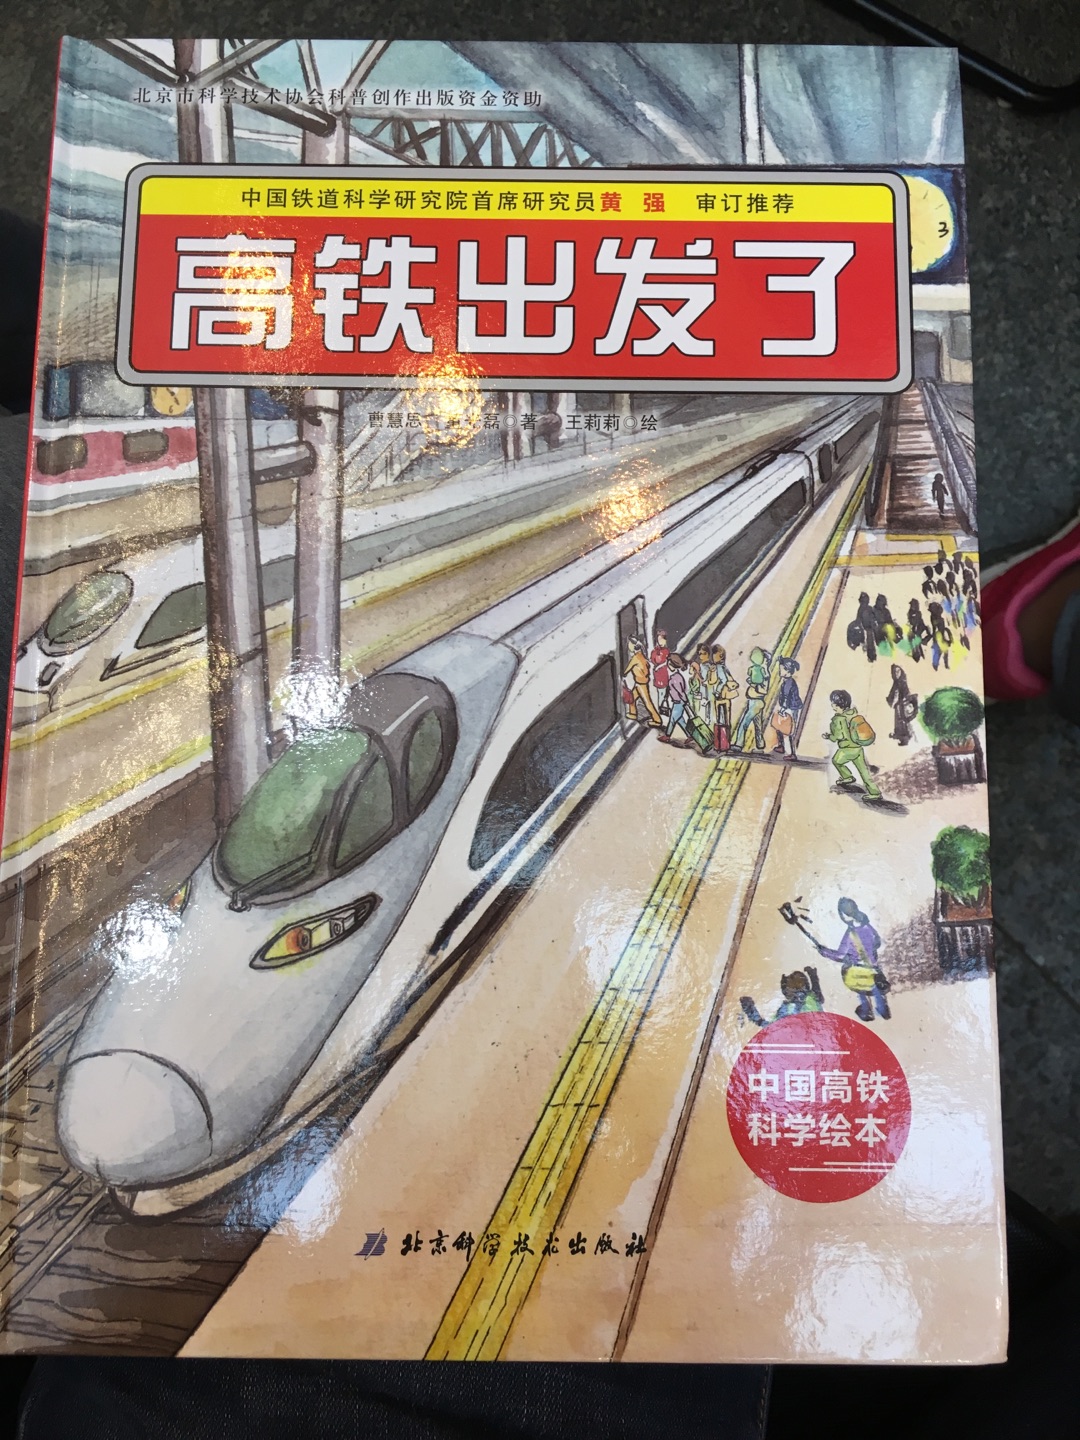 孩子超喜欢高铁，这书其的很不错，图文并茂地介绍了高铁，很好，值得购买。